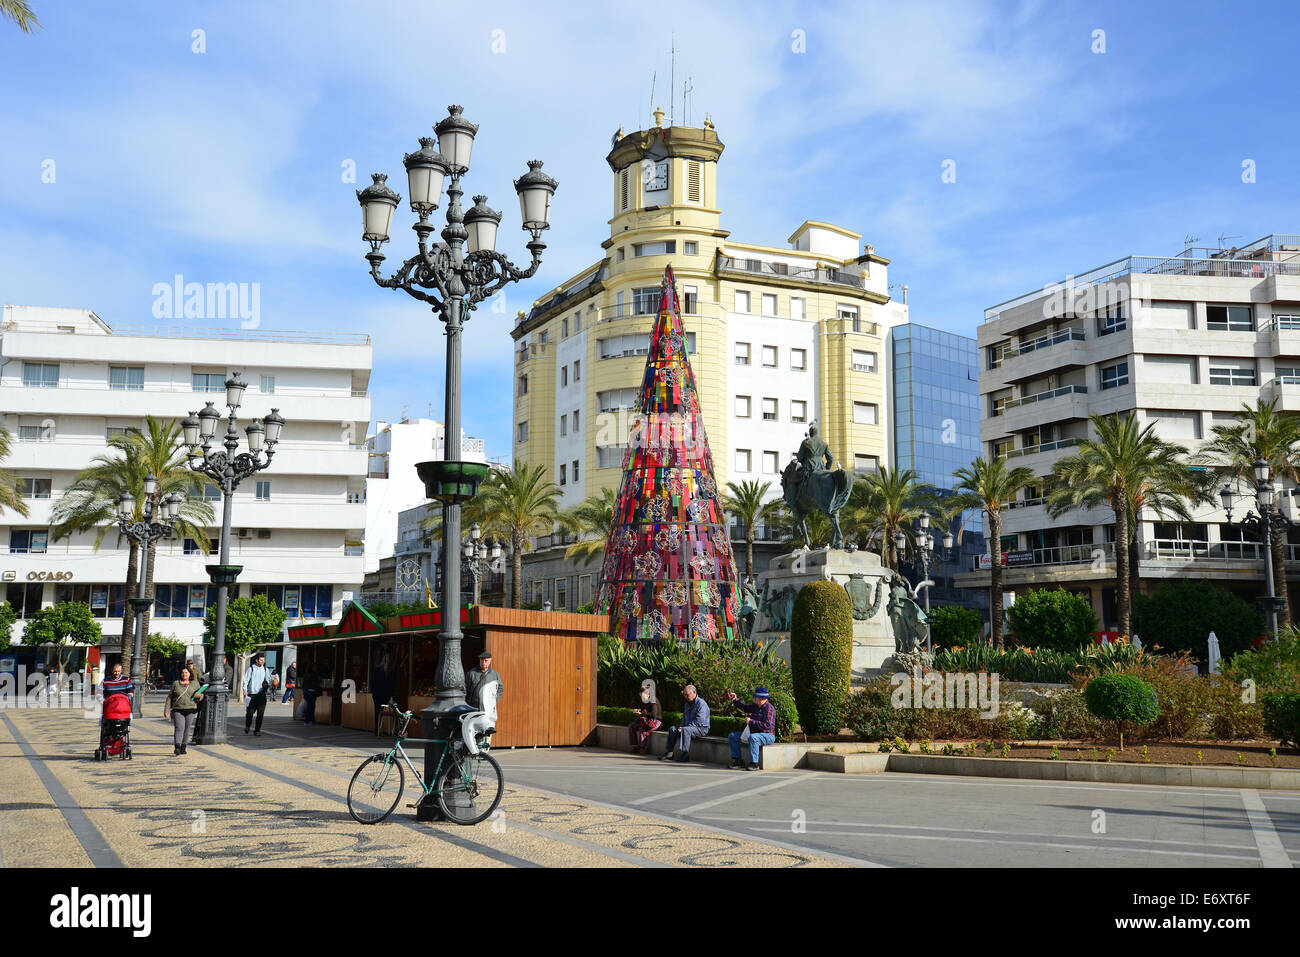 Plaza del Arenal, Jerez de la Frontera, Province of Cádiz, Andalusia, Kingdom of Spain Stock Photo